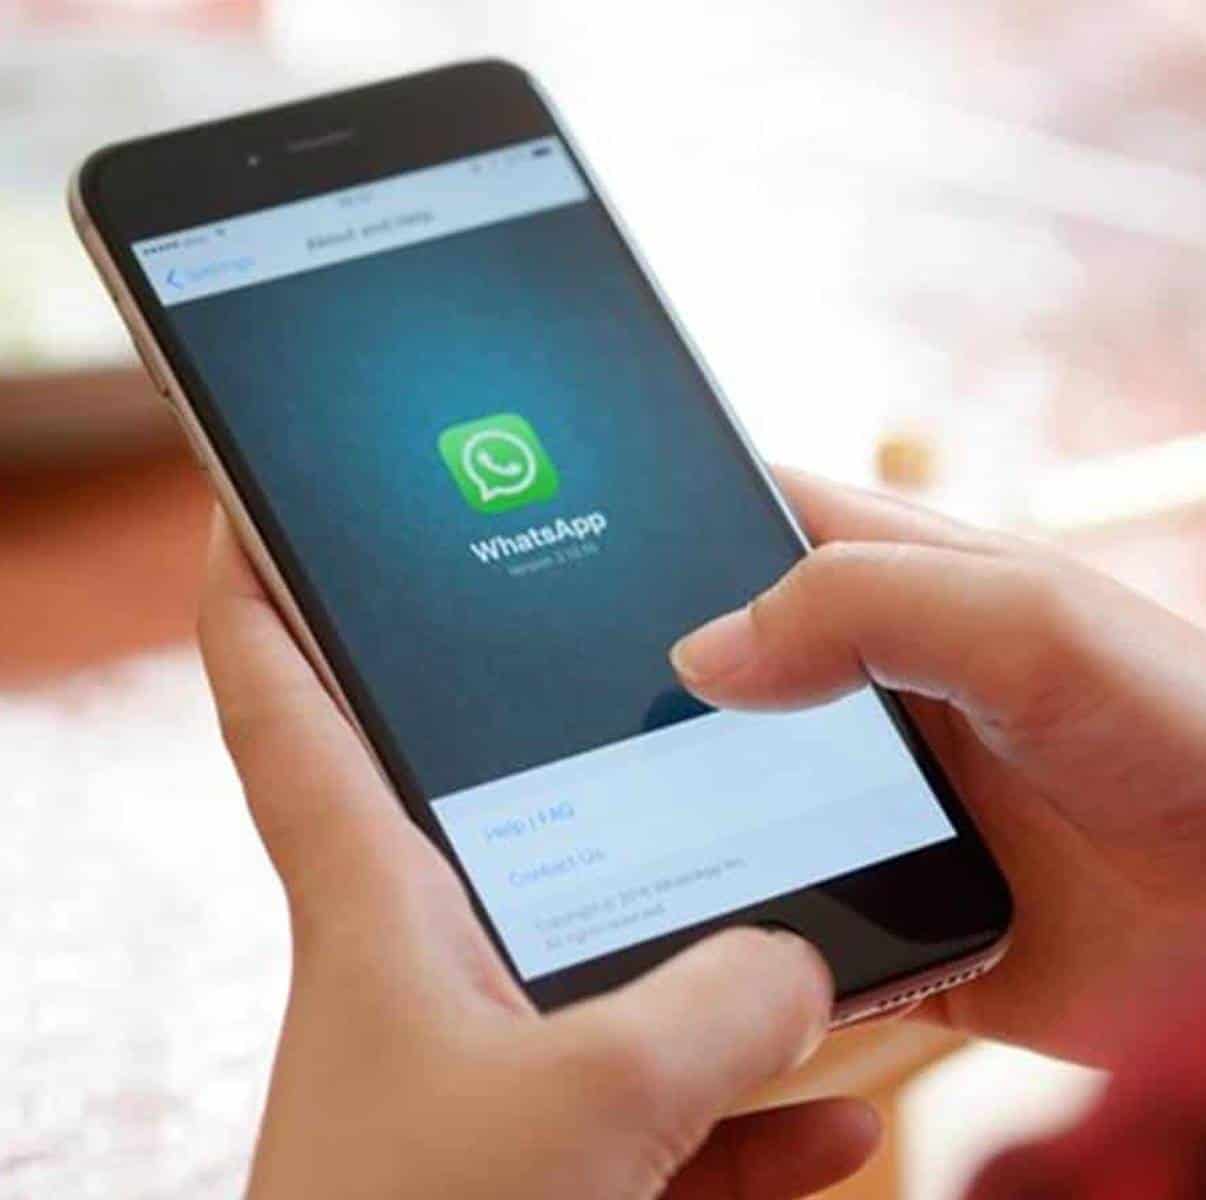 Novo golpe envolvendo o aplicativo WhatsApp circula na internet